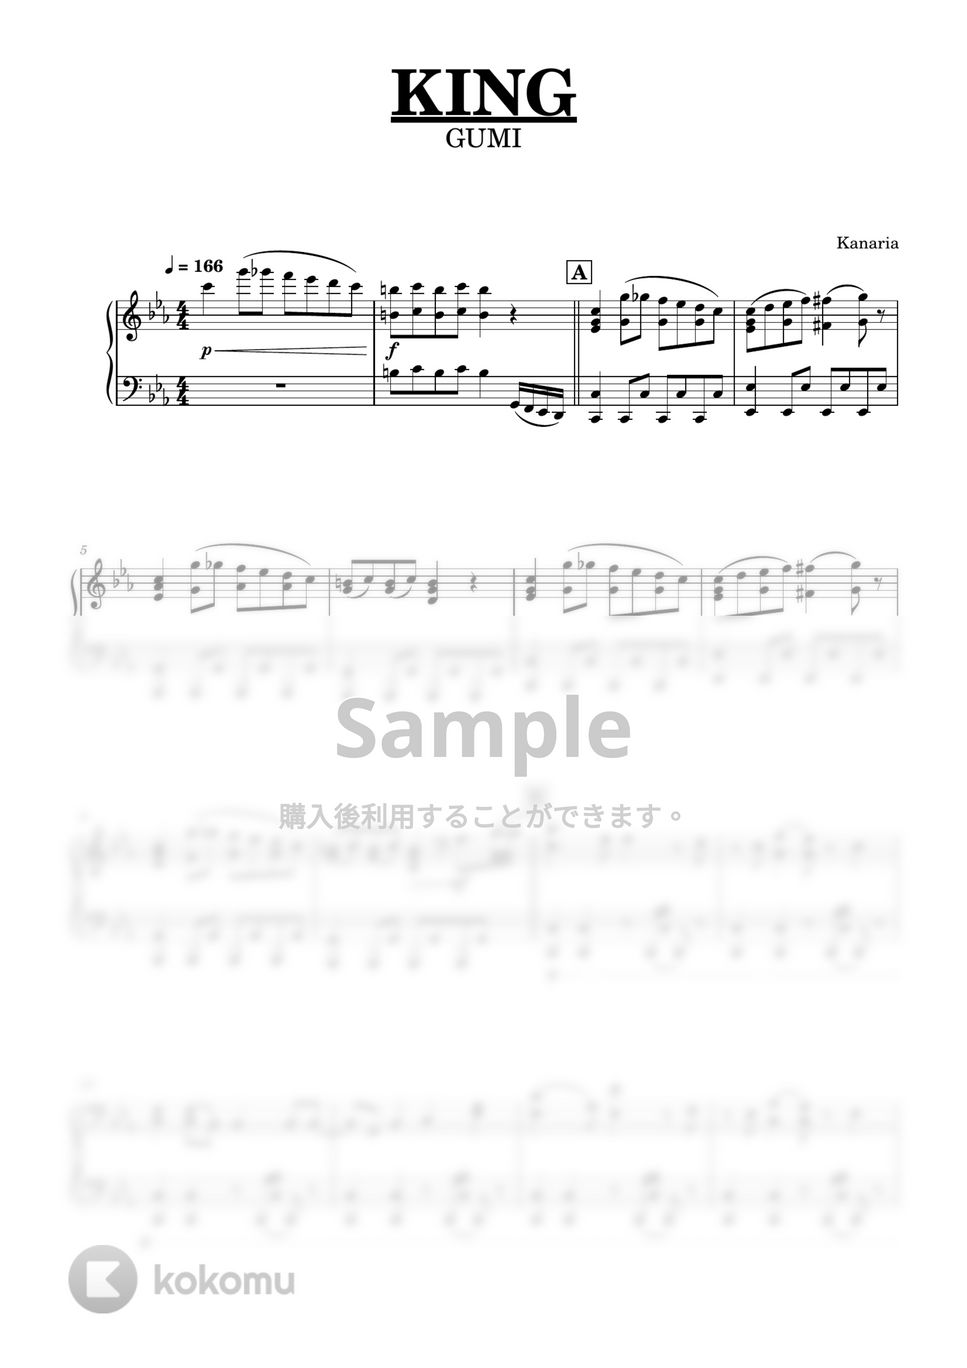 Kanaria - KING (ピアノソロ上級) by Niisan